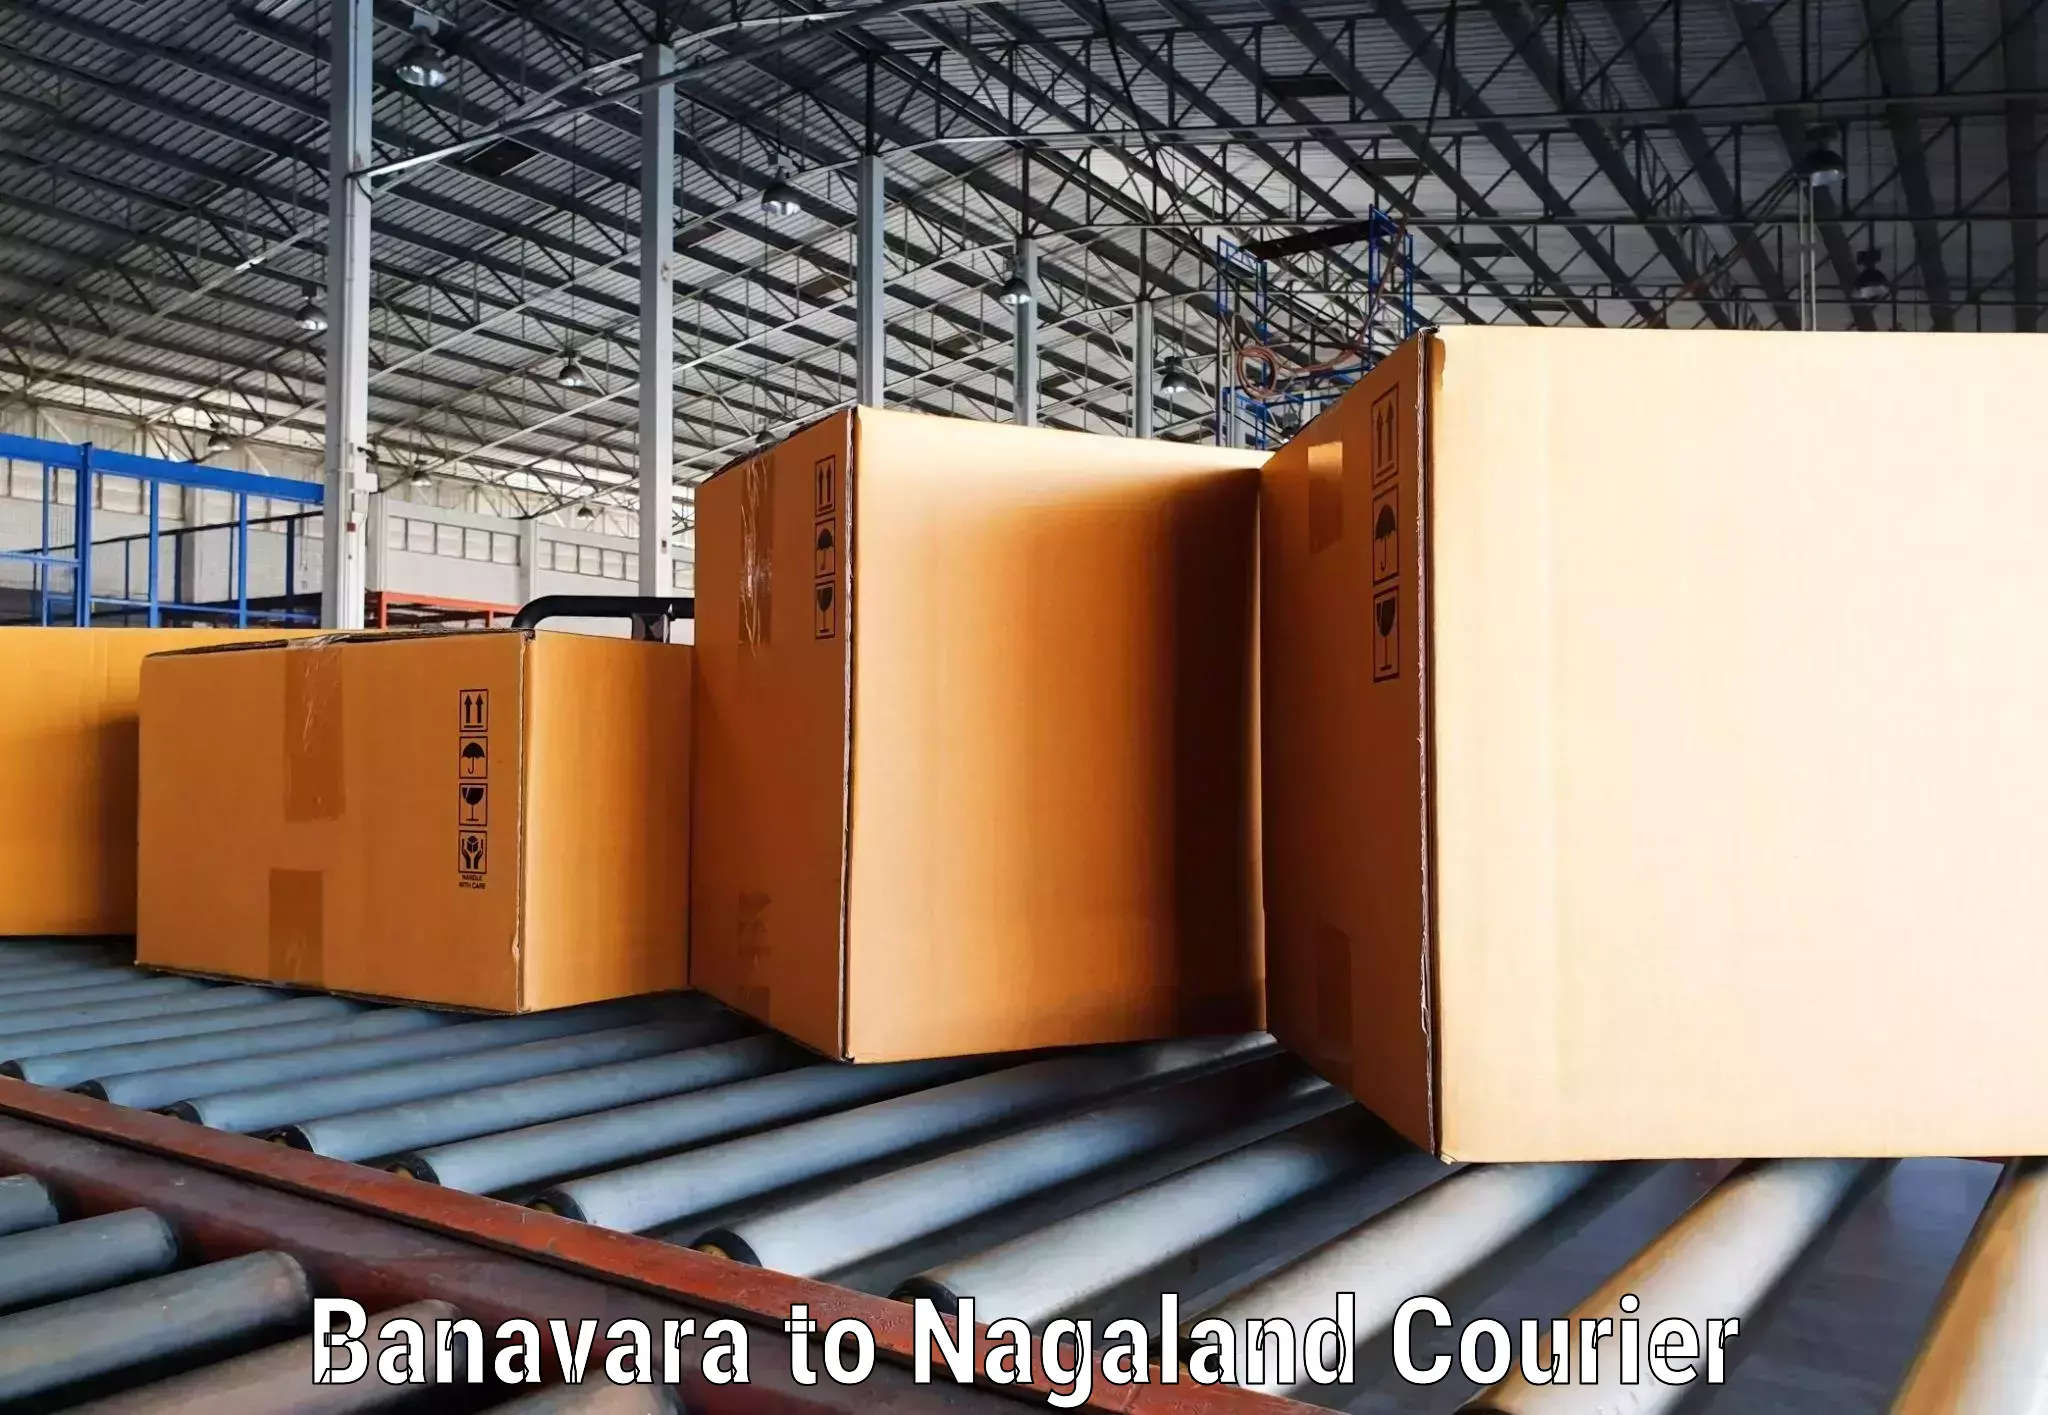 Comprehensive shipping network Banavara to NIT Nagaland